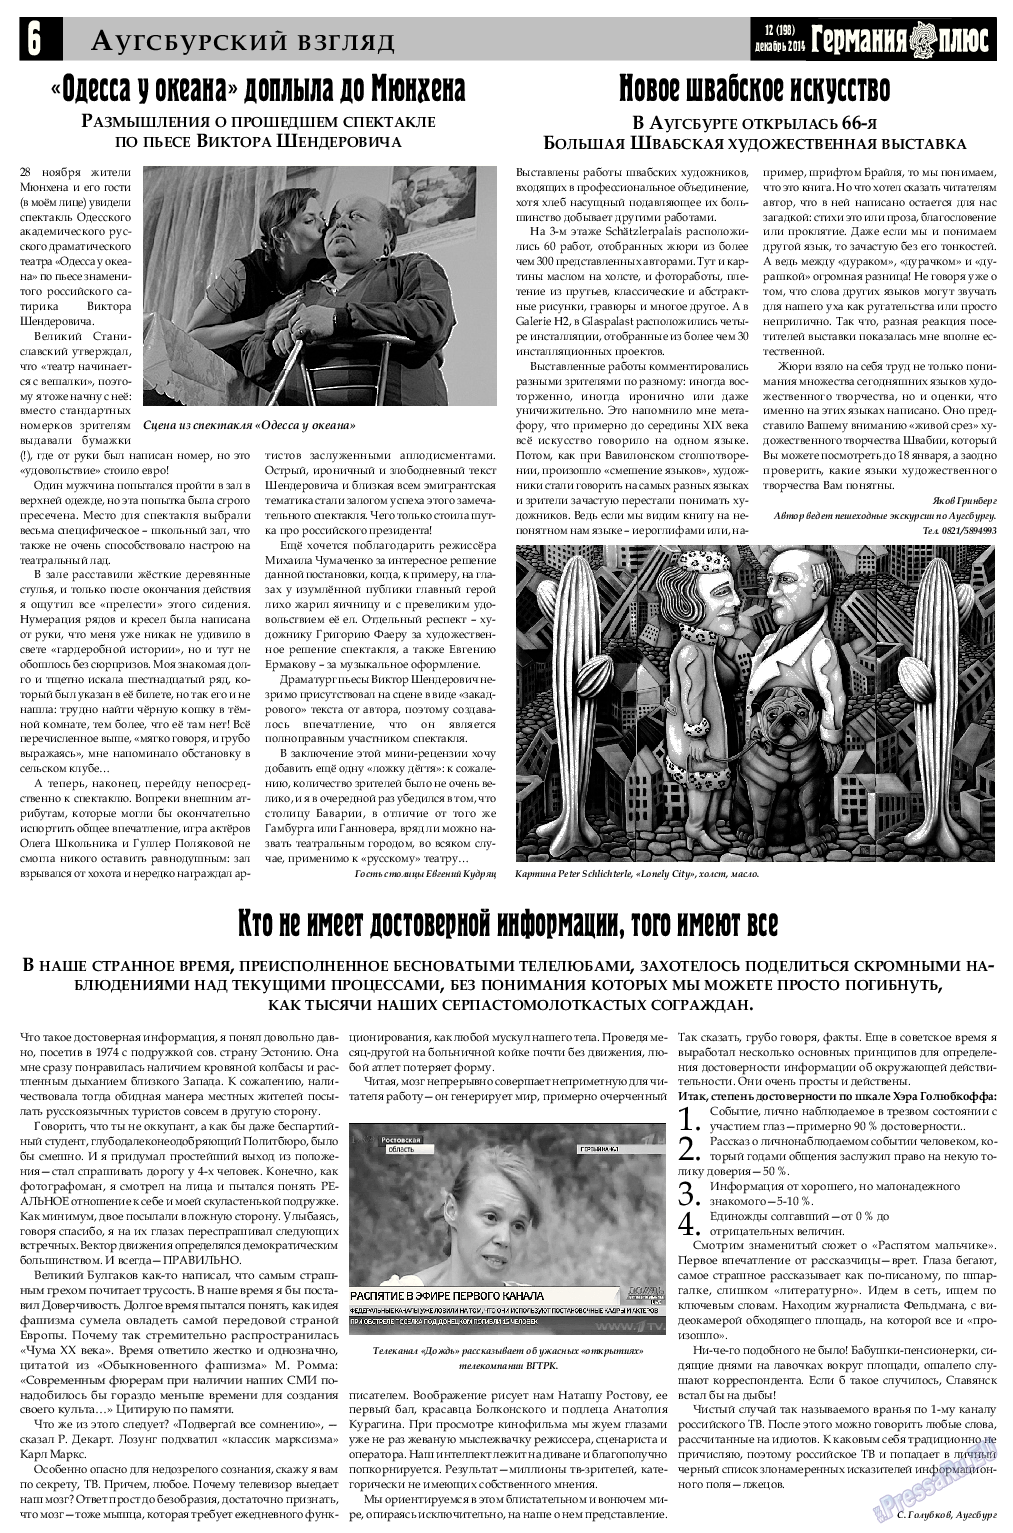 Германия плюс (газета). 2014 год, номер 12, стр. 6